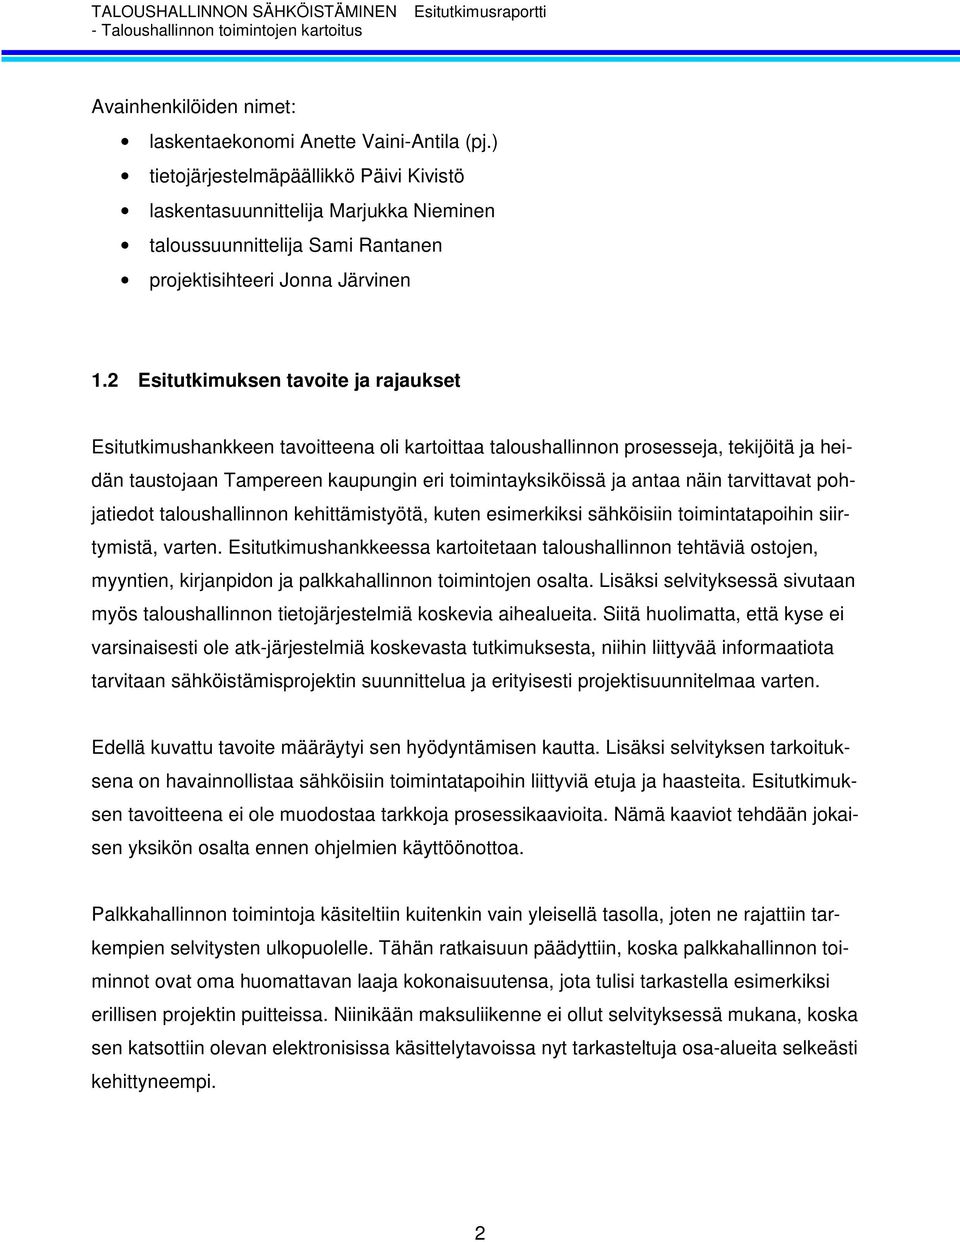 2 Esitutkimuksen tavoite ja rajaukset Esitutkimushankkeen tavoitteena oli kartoittaa taloushallinnon prosesseja, tekijöitä ja heidän taustojaan Tampereen kaupungin eri toimintayksiköissä ja antaa